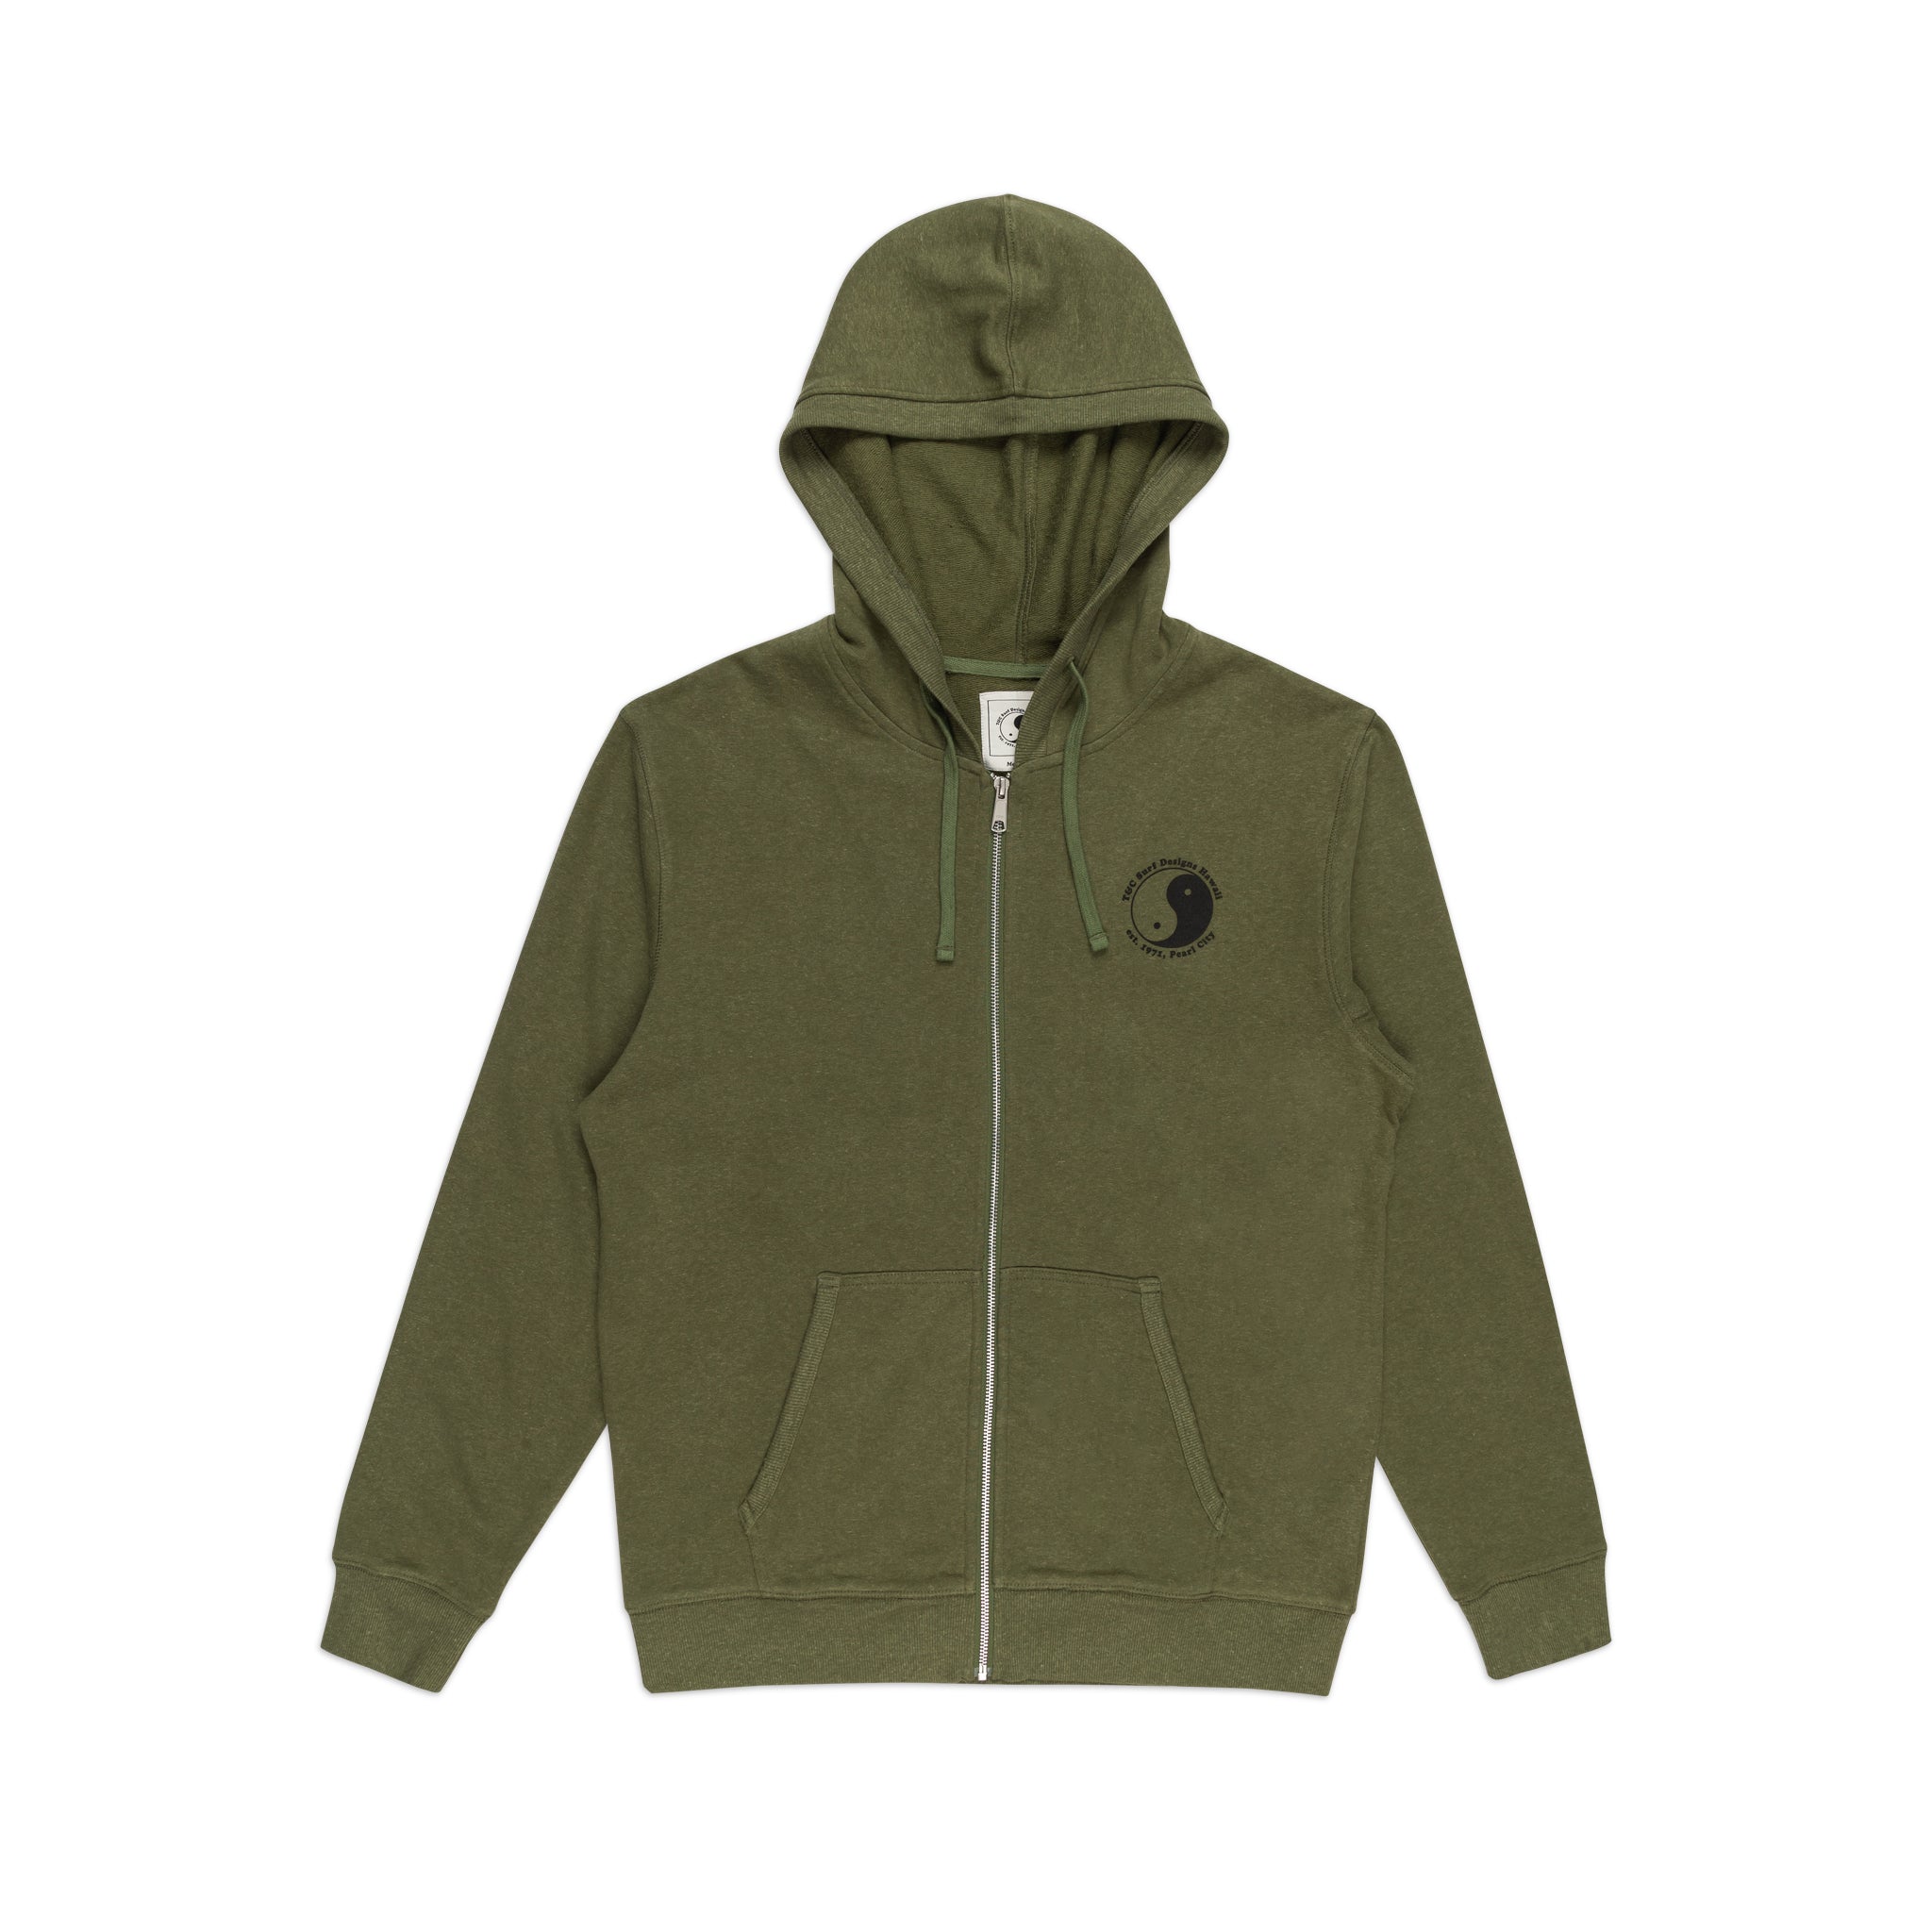 T&C Surf Designs OG Full Zip Hooded Fleece - Military Green